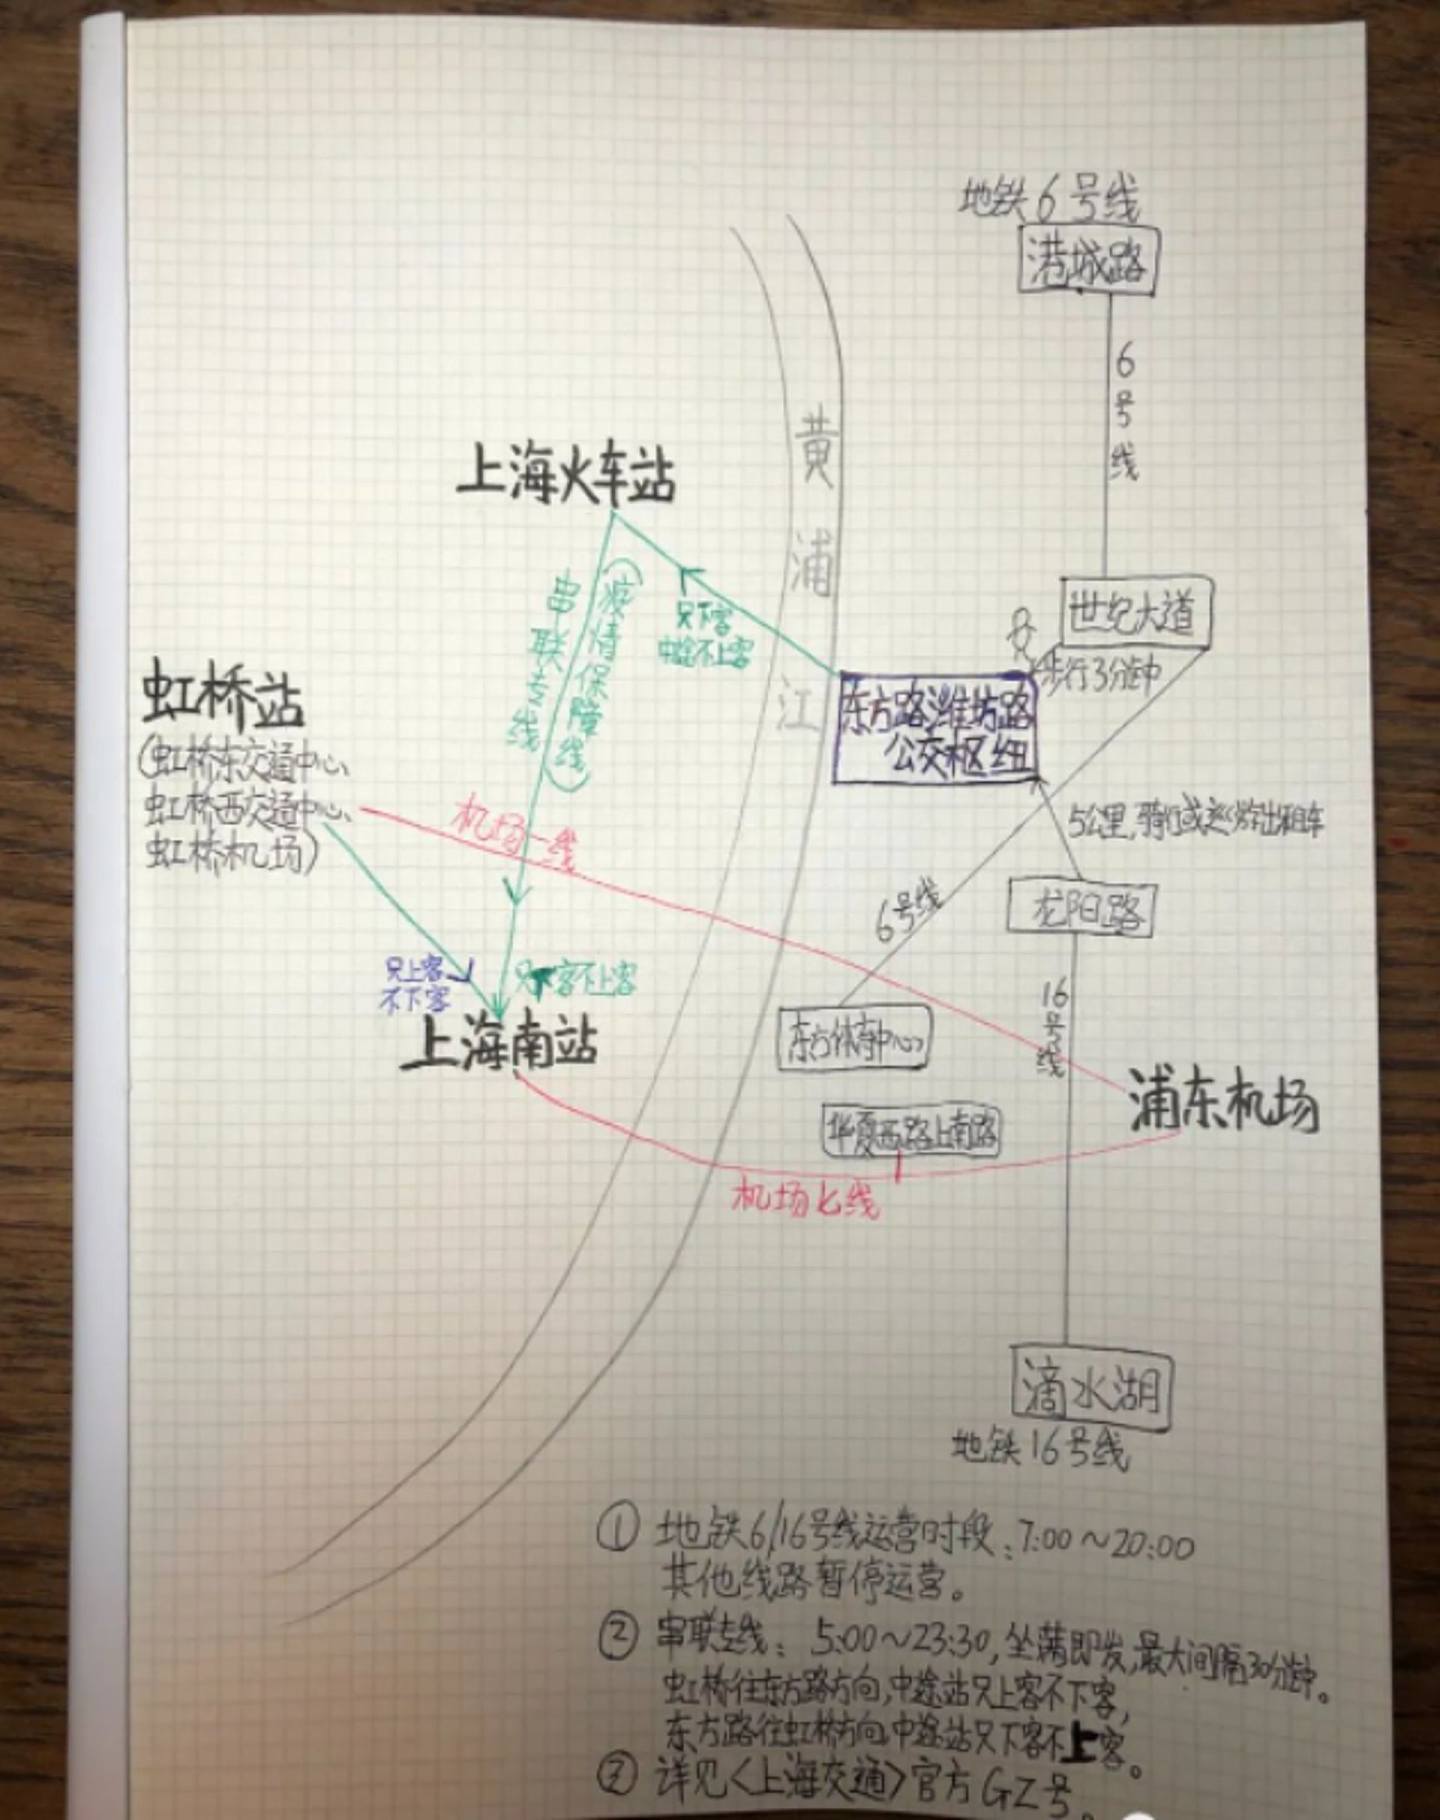 上海微信公众号「上海文艺青年」自绘图表，介绍如何到达上海各交通枢纽。 （微信公众号＠上海文艺青年）